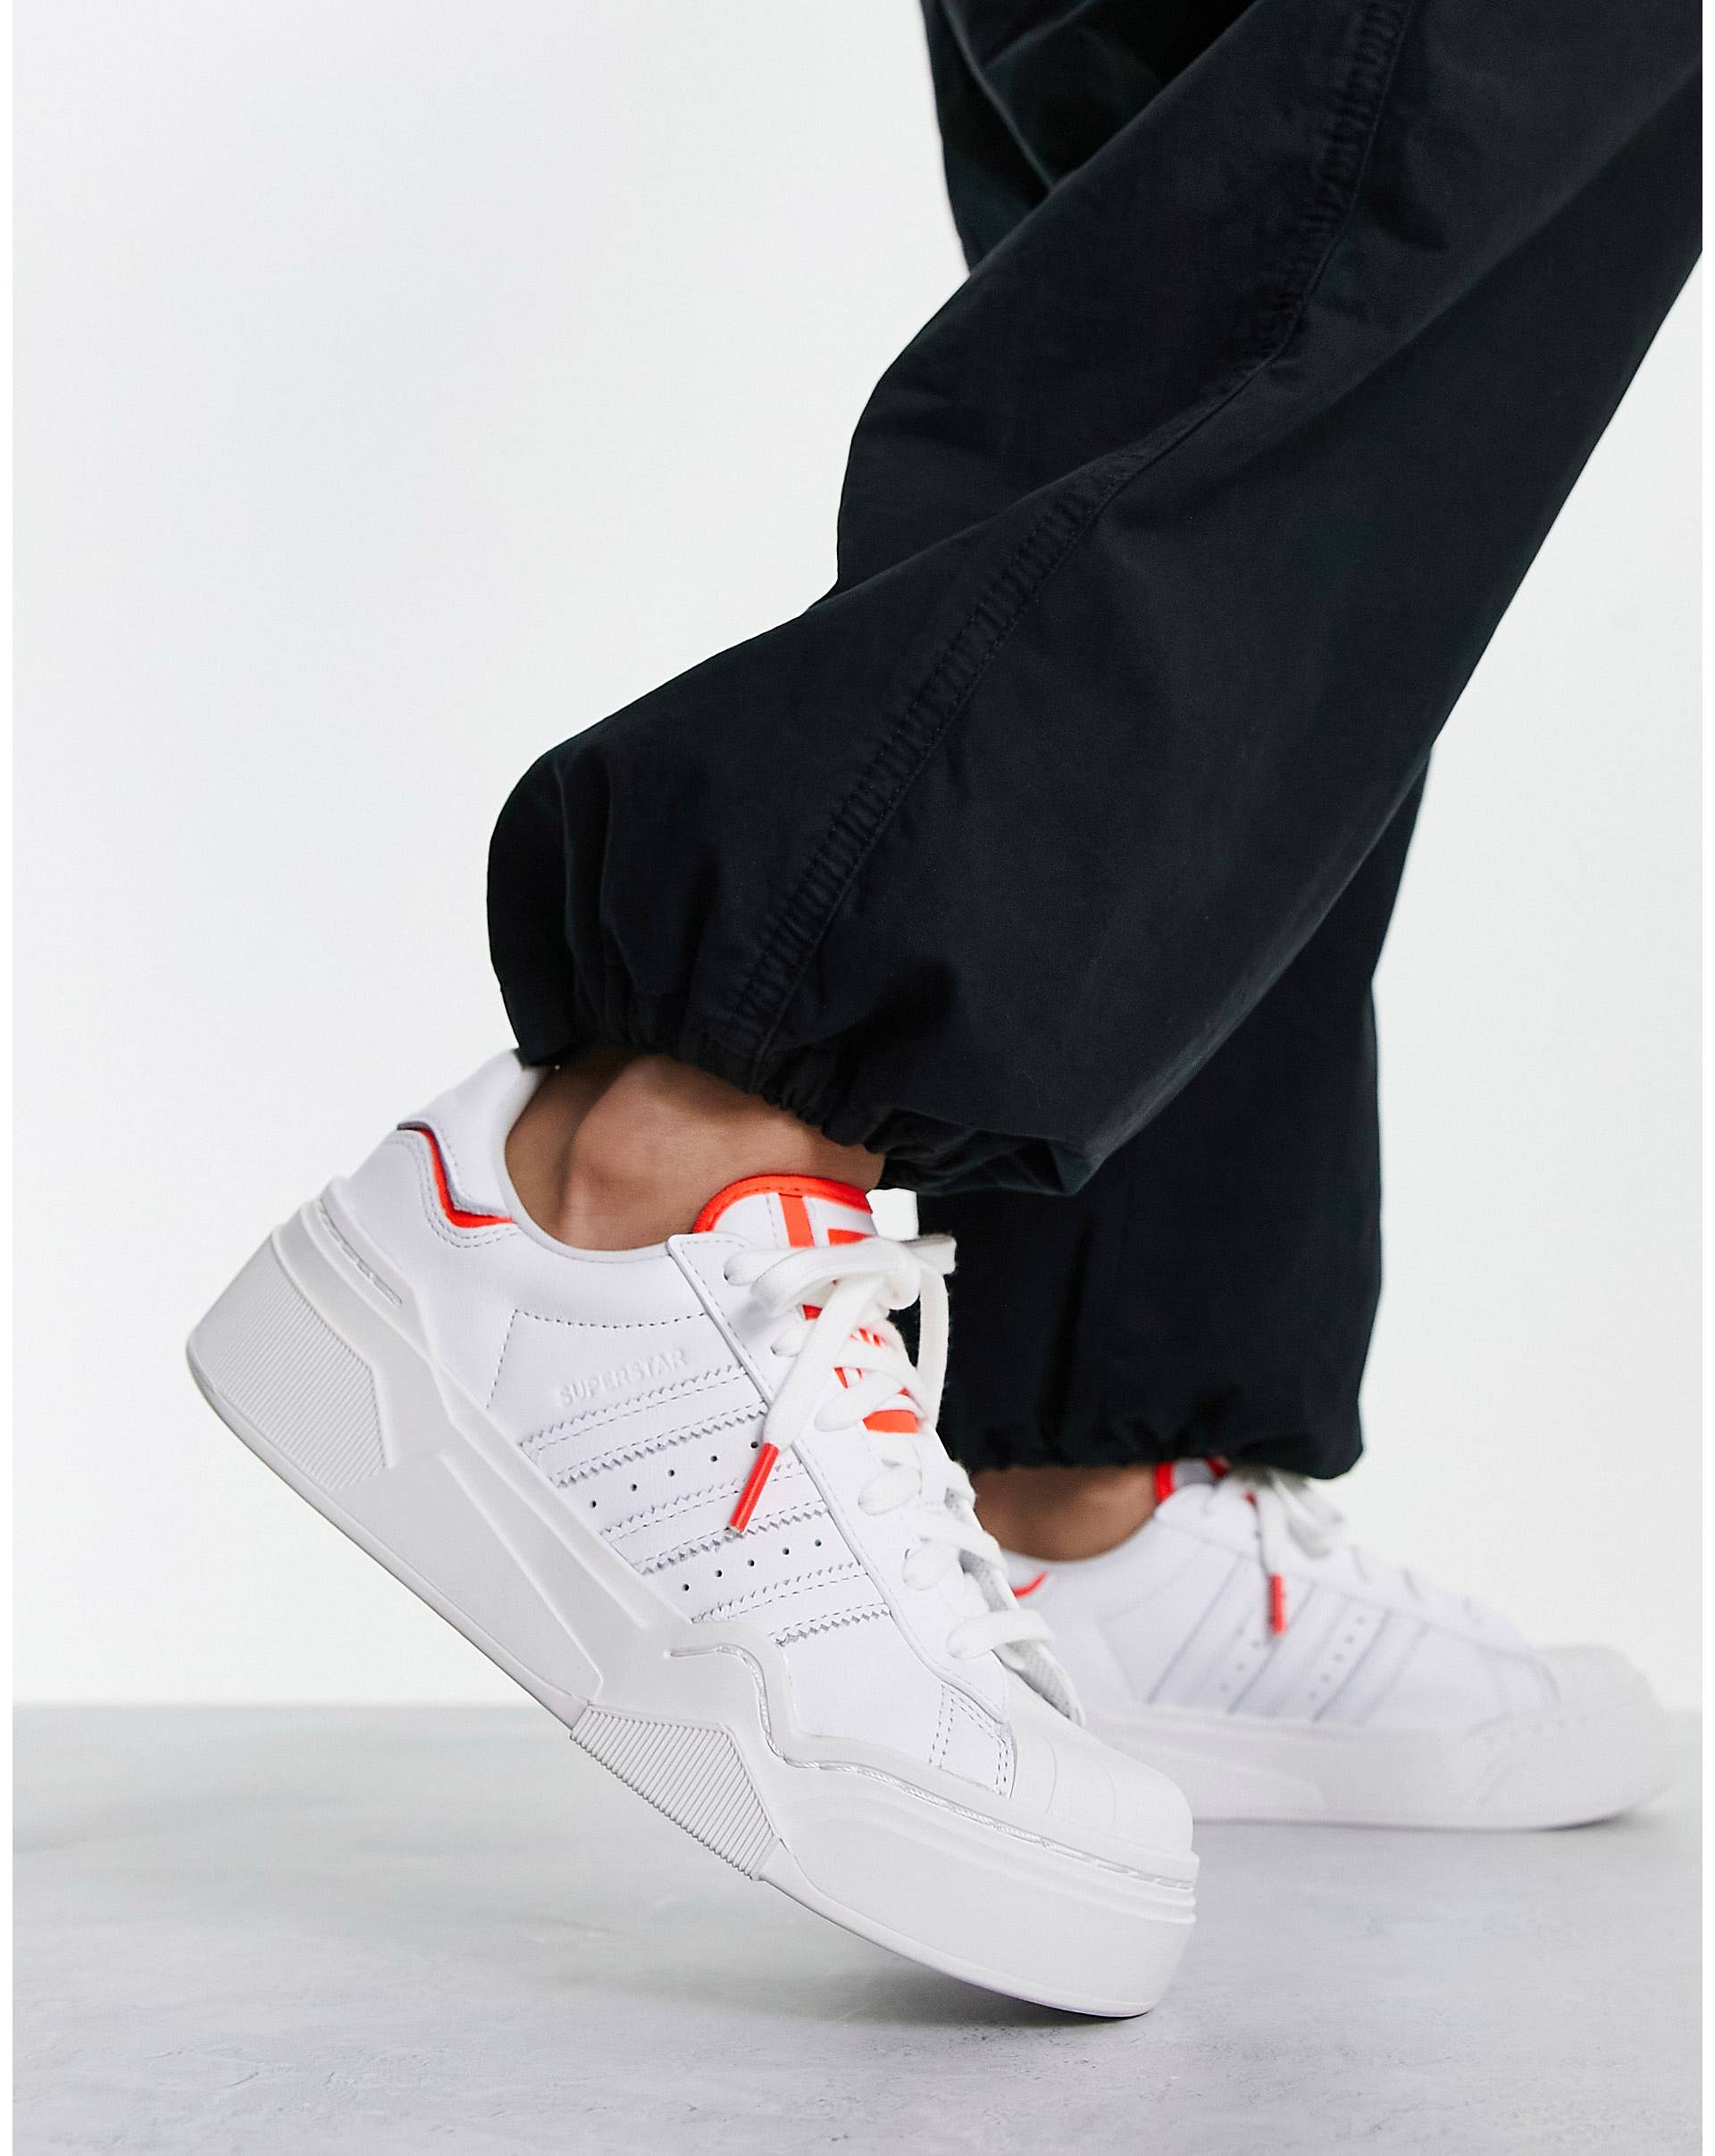 Бело-красные кроссовки adidas Originals Superstar Bonega 2B фотографии